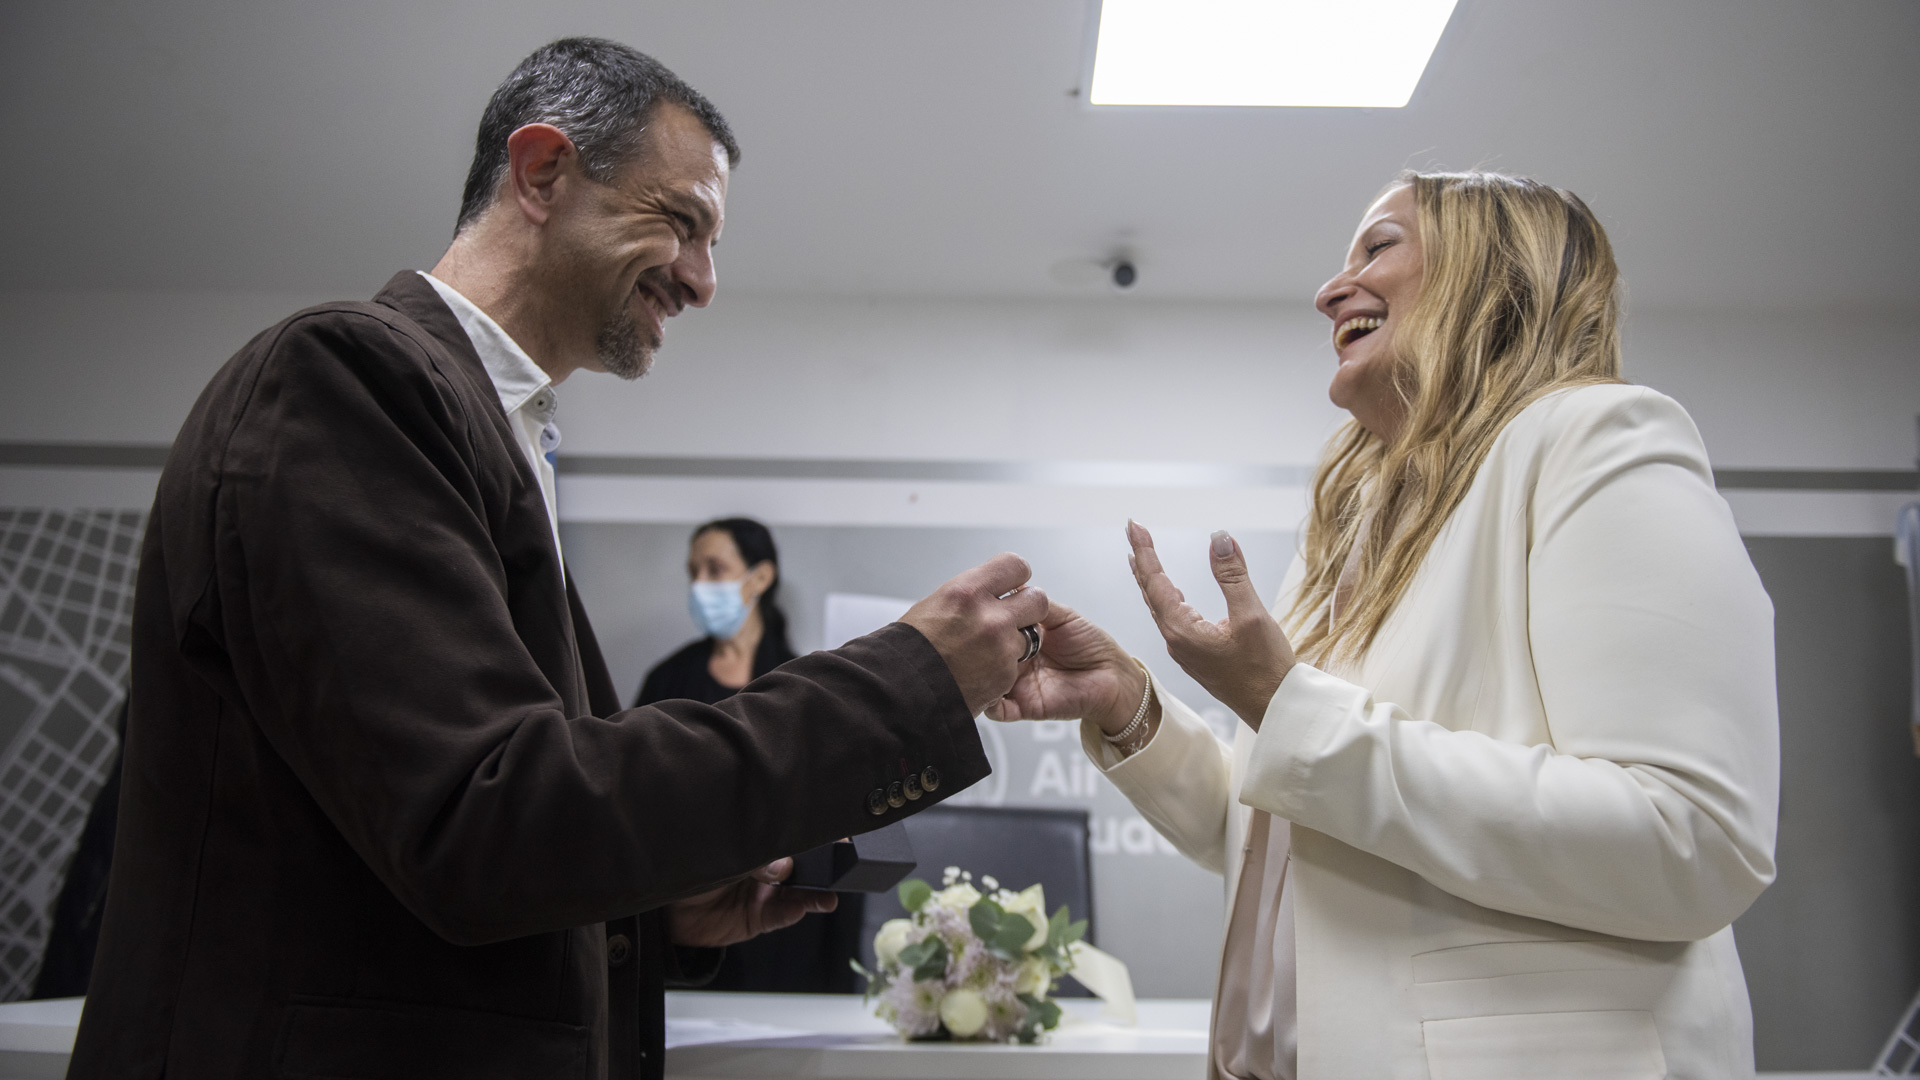 Gabriel Katzuni le entrega el anillo a Valeria Schwalb en la ceremonia de la unión civil (Foto: Adrián Escandar)